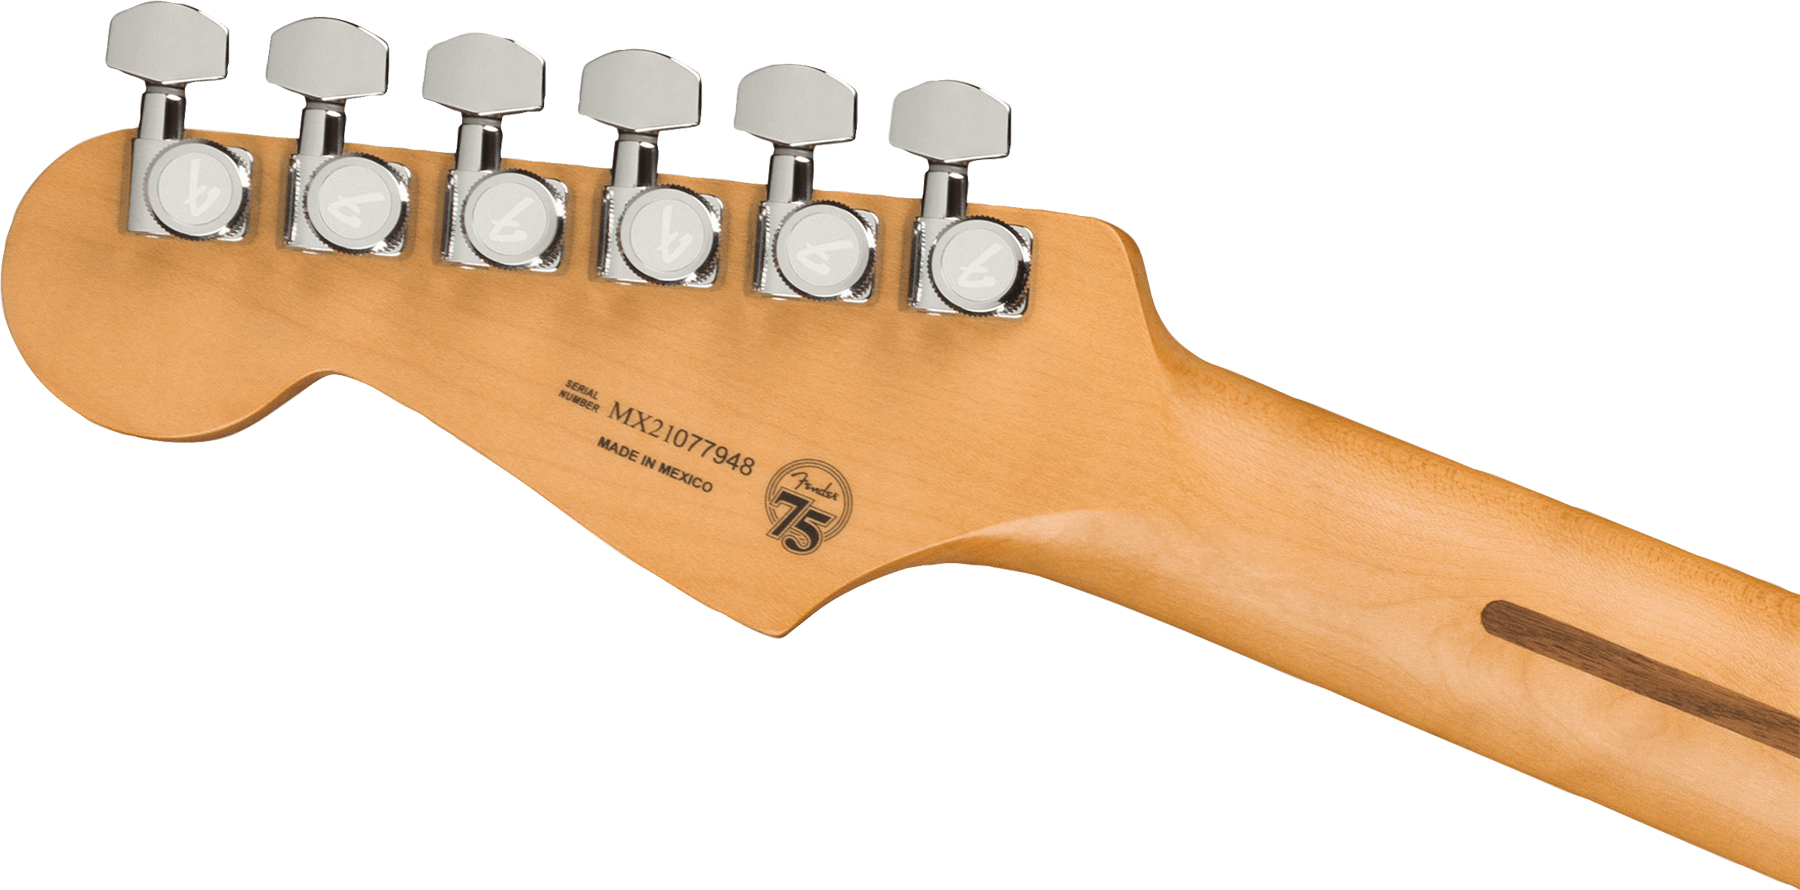 Fender Strat Player Plus Lh Mex Gaucher 3s Trem Mn - Olympic Pearl - Guitarra electrica para zurdos - Variation 3